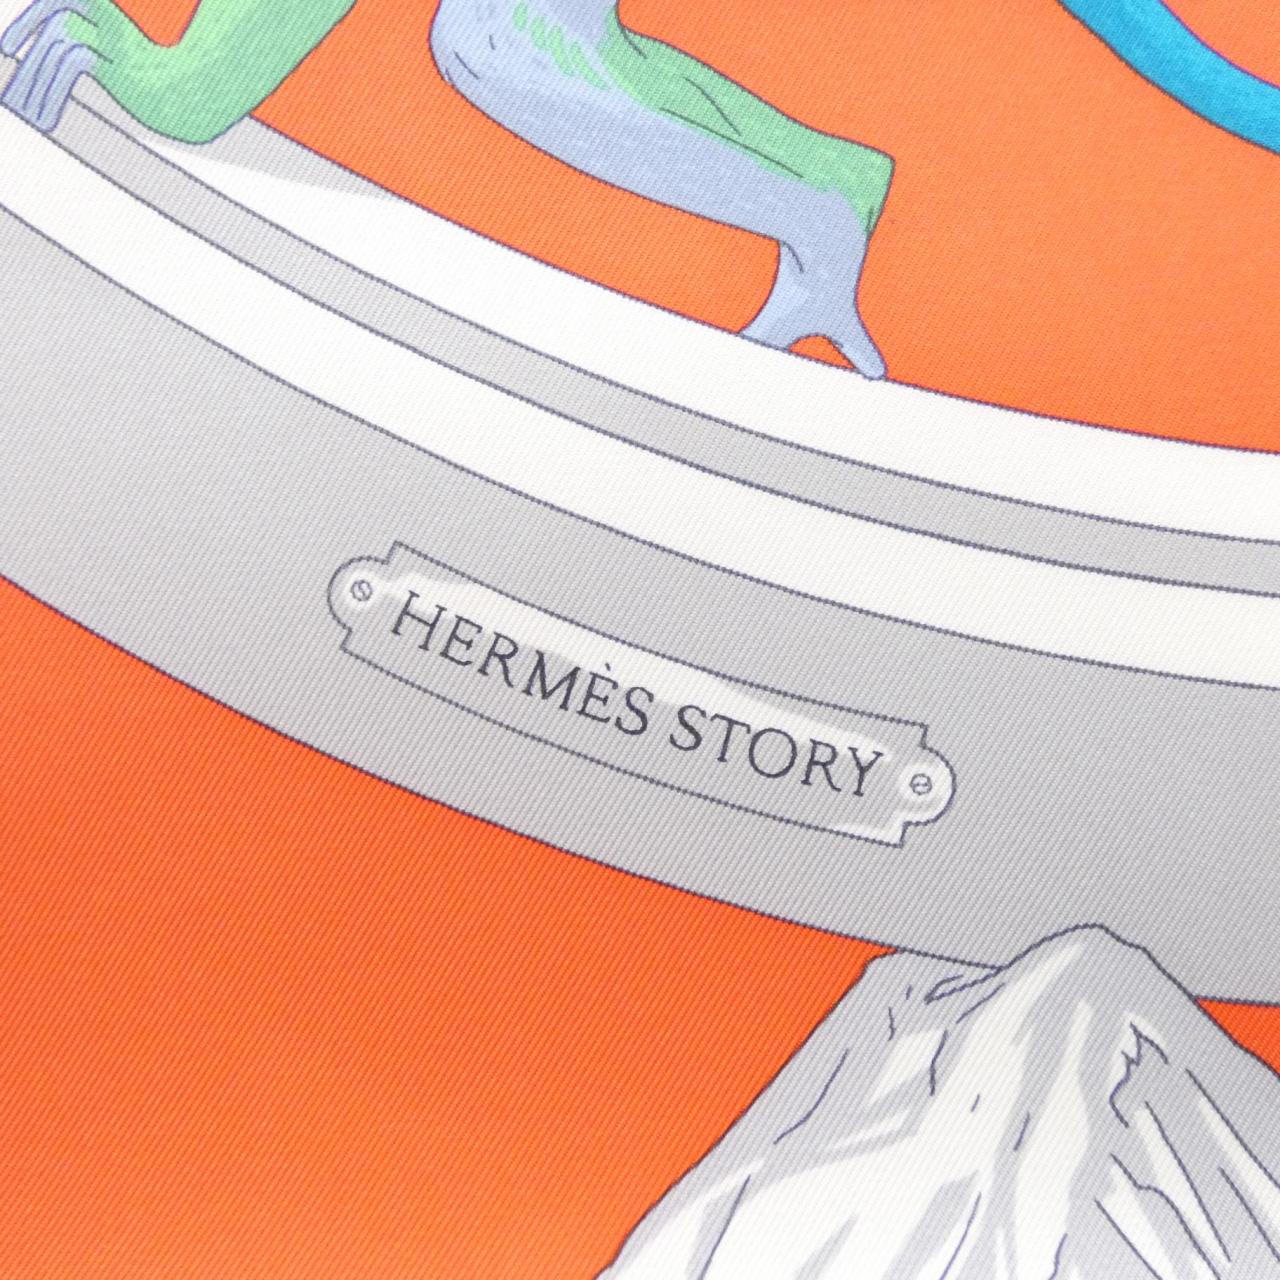 【未使用品】エルメス HERMES STORY カレ 003875S スカーフ